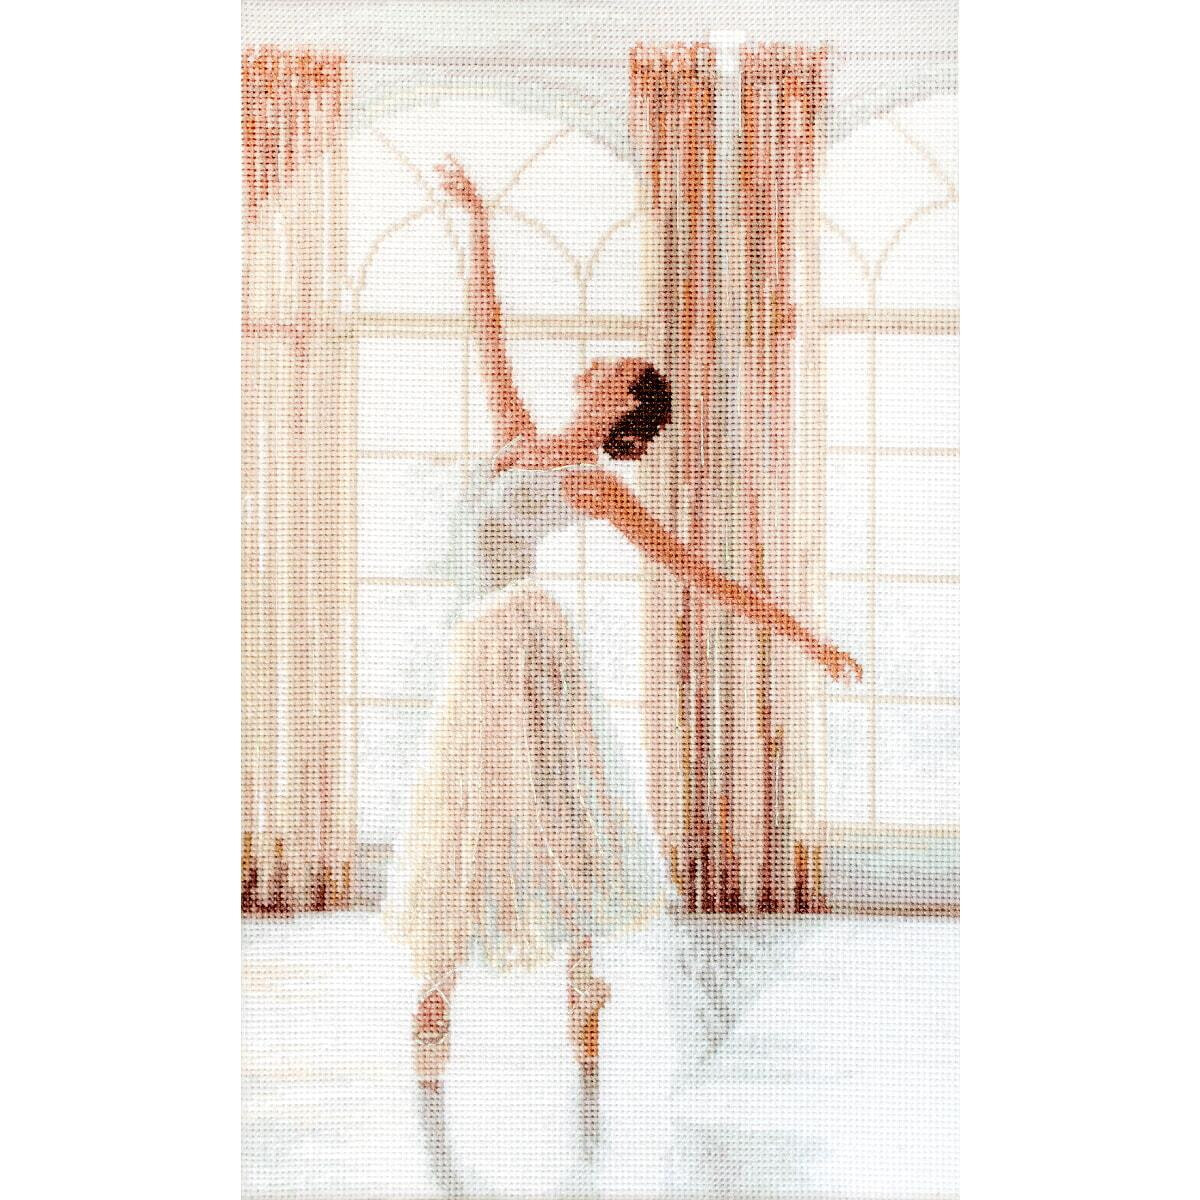 Una ballerina in tutù bianco danza con grazia in...